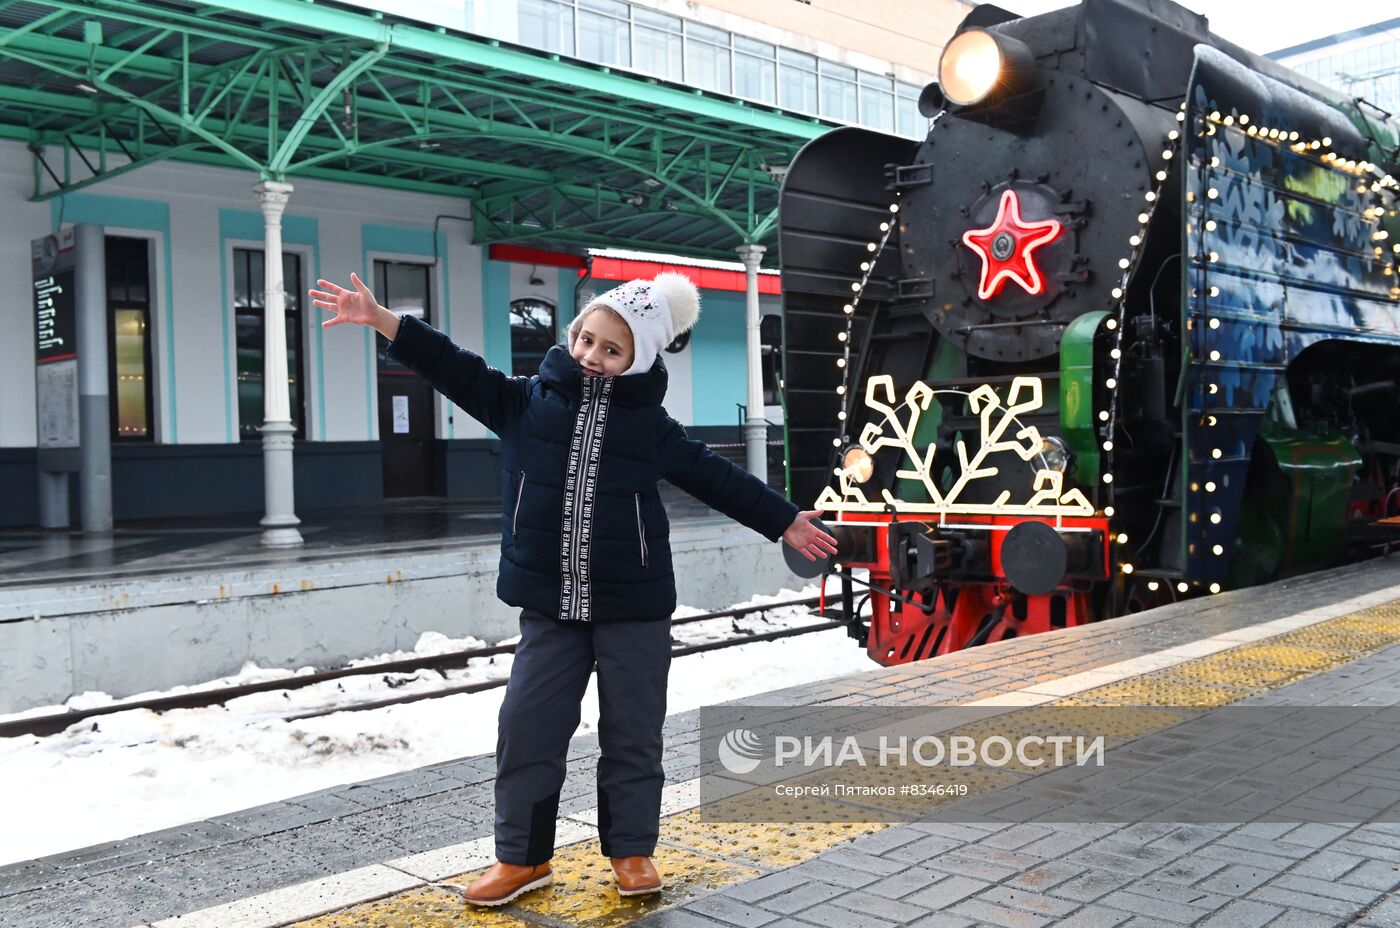 Прибытие поезда Деда Мороза в Москву 